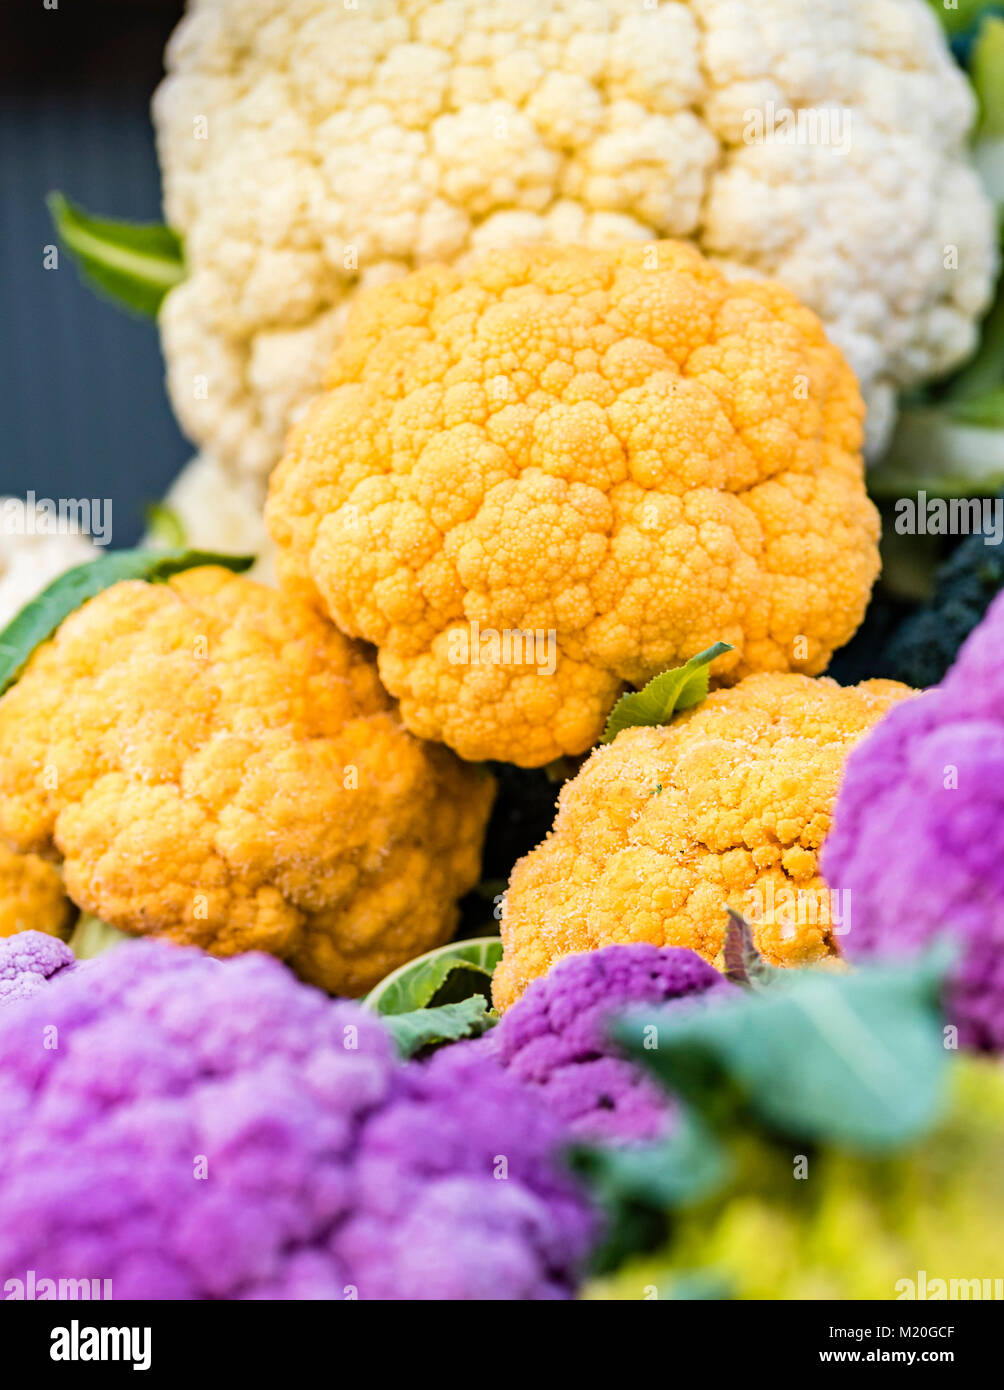 Organici colorati cavolfiore fresco visualizzati al mercato, closeup. Vivid viola, l'arancione, bianco cavolfiore in stallo del mercato, Sydney, Australia. Foto Stock